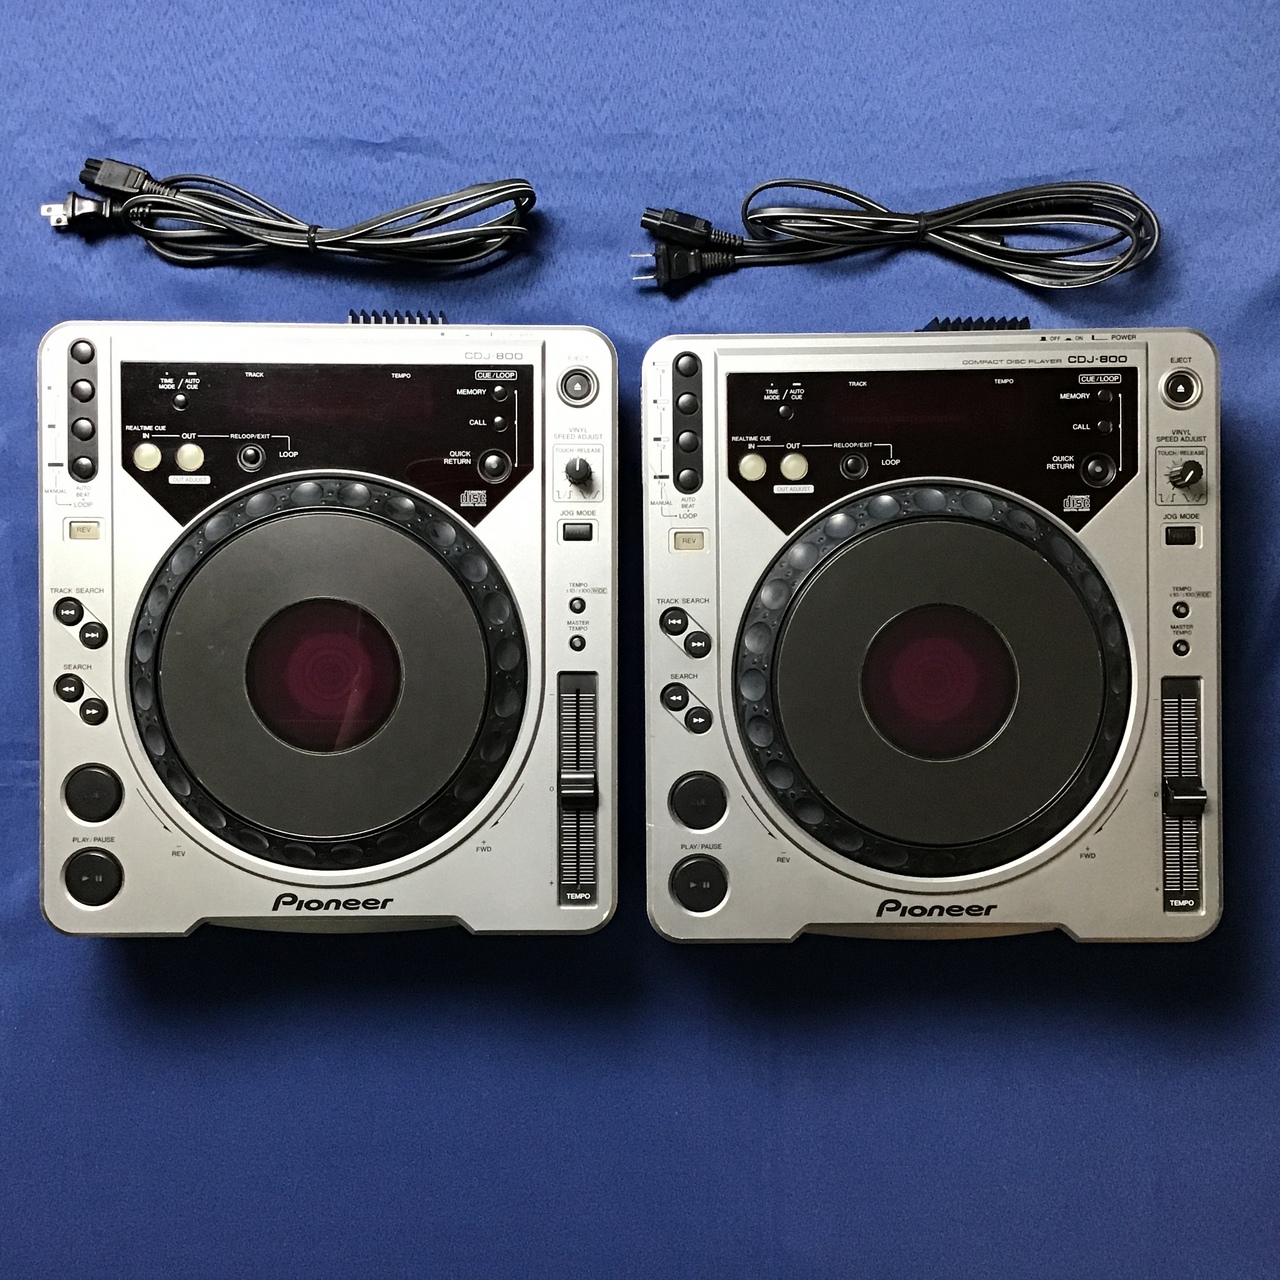 pioneer dj パイオニア CDJ-50Ⅱ - DJ機材